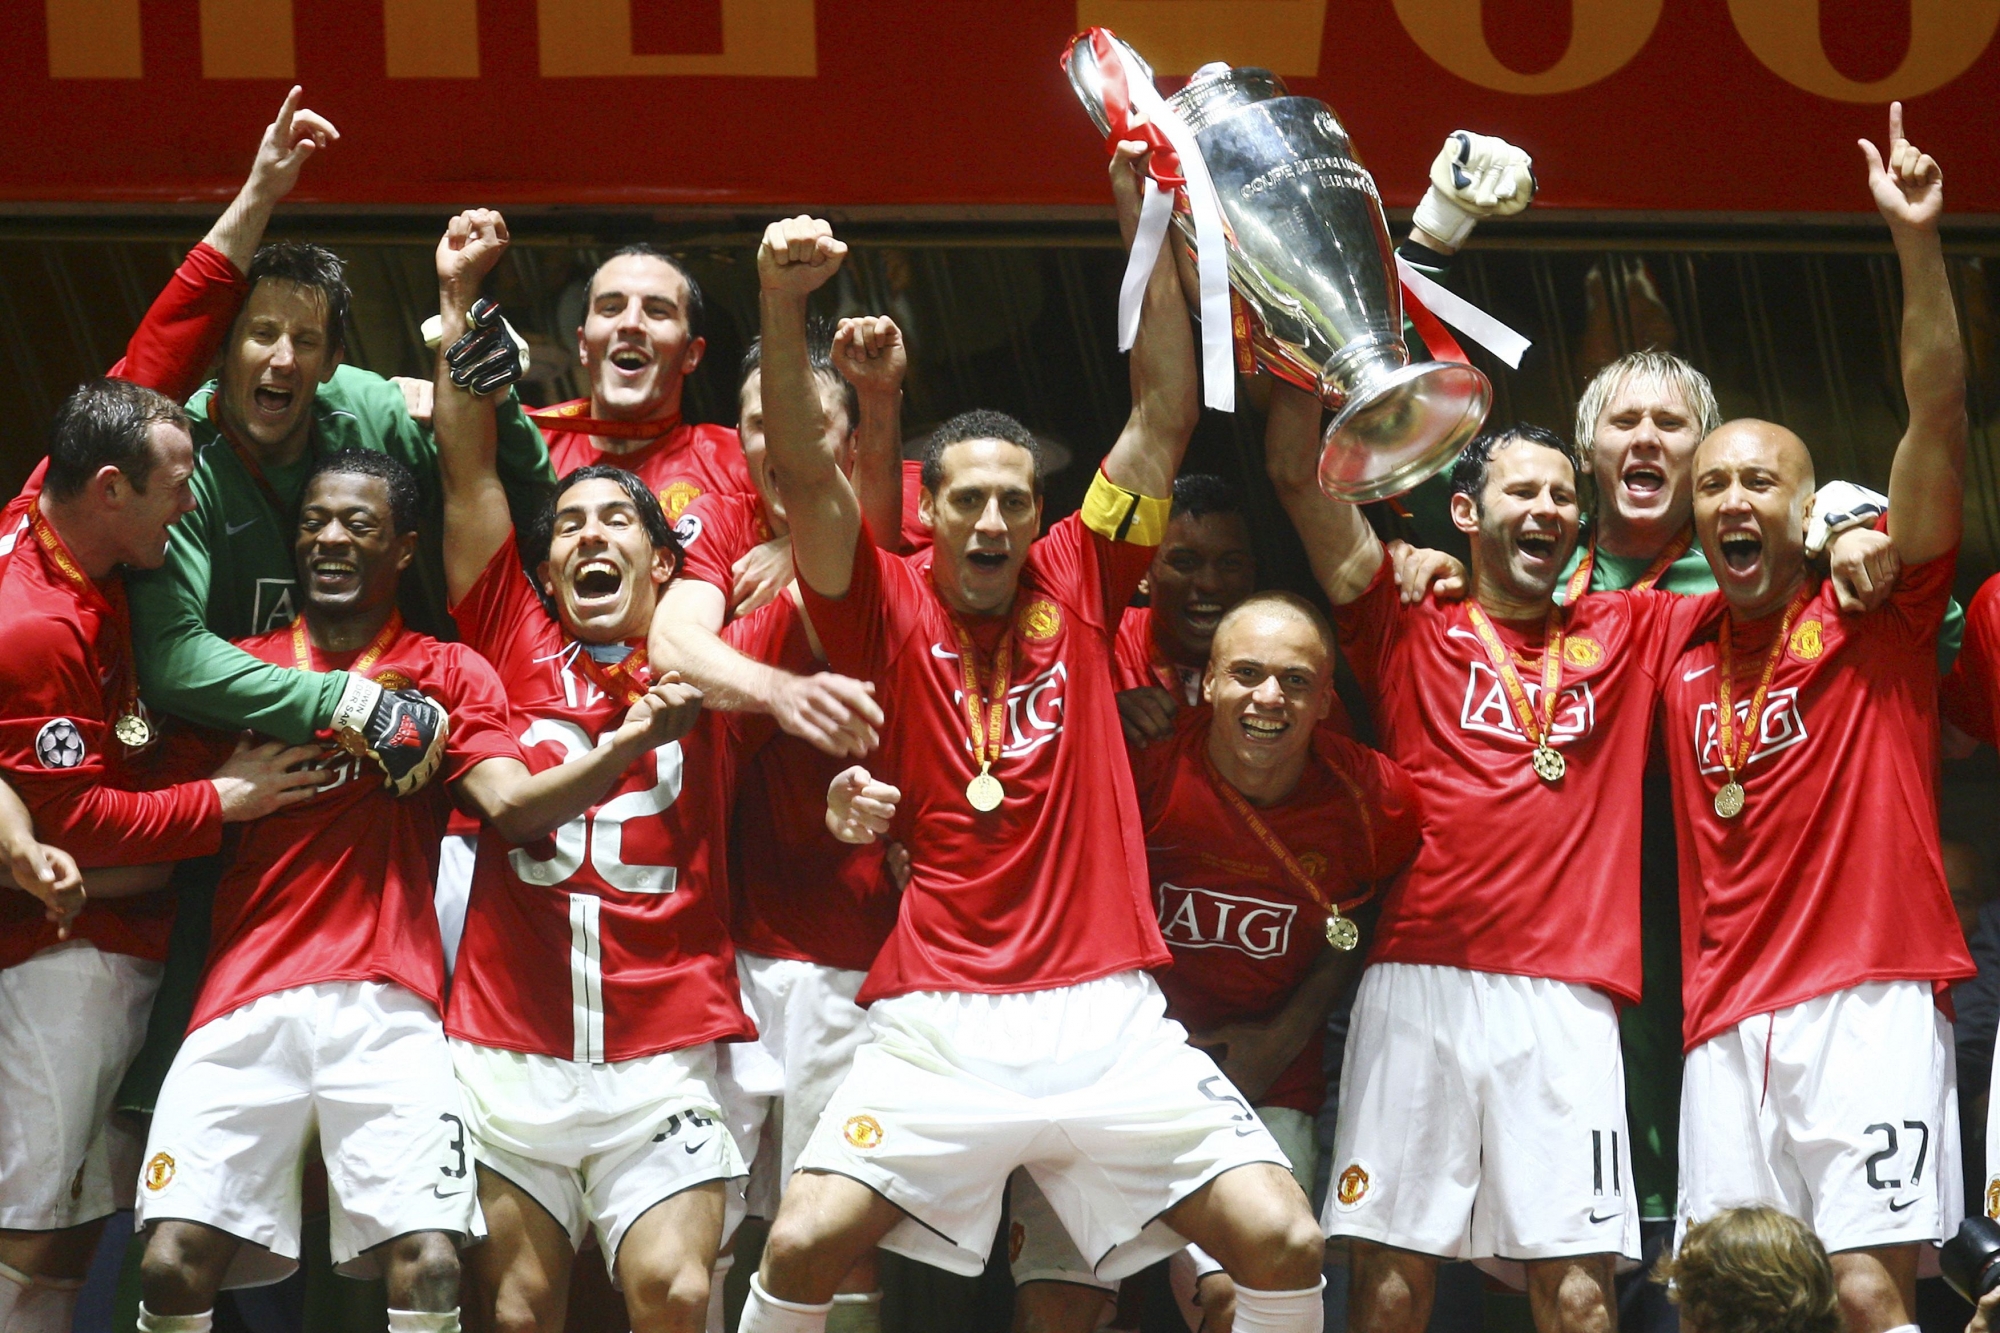 Манчестер юнайтед победитель лиги чемпионов 2008